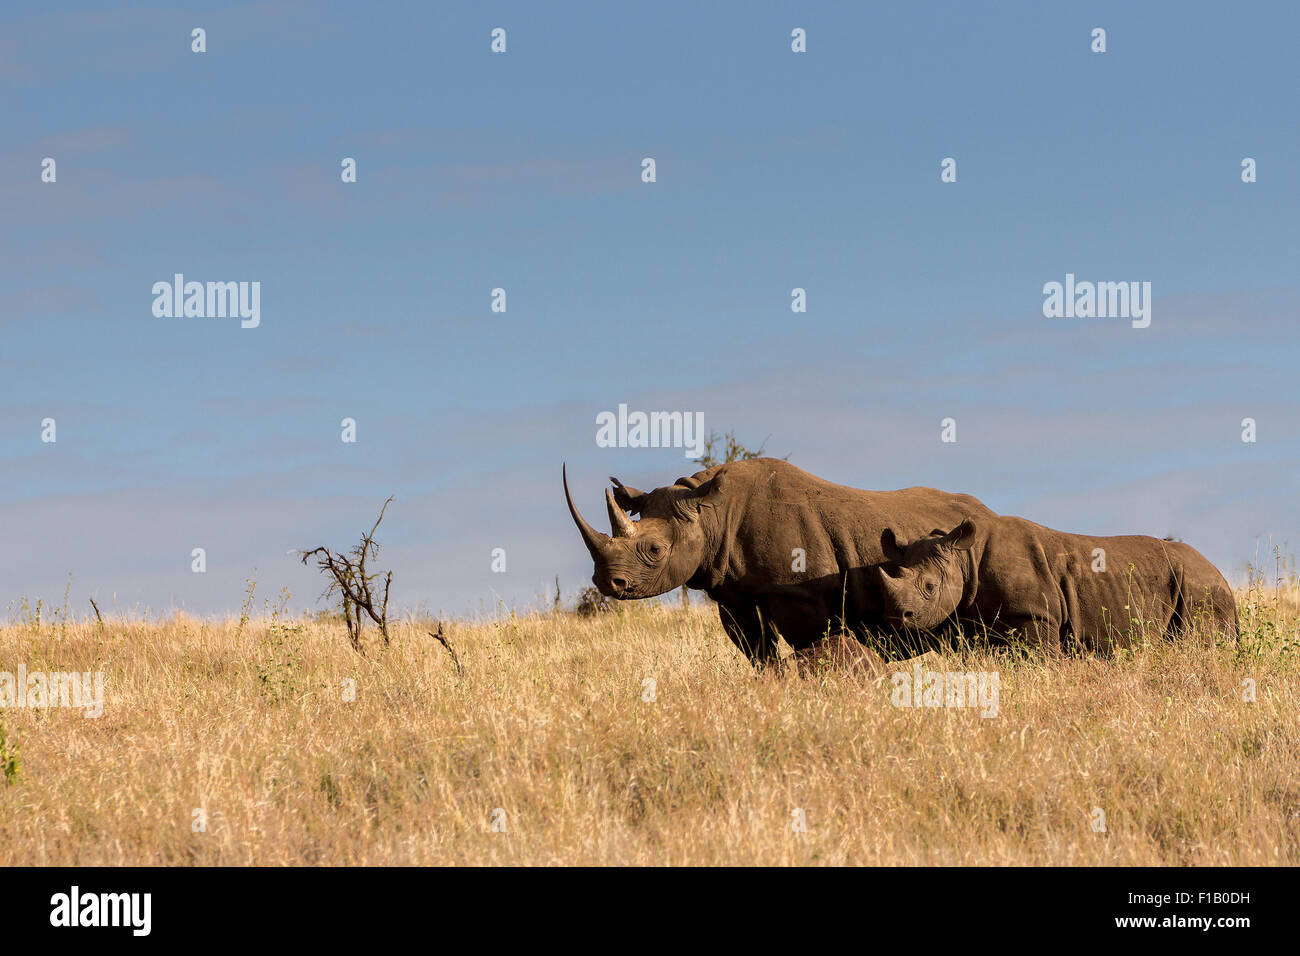 Female Black rhino and young Black Baby Rhino Kenya standing in early morining sun shine, sunbathing Stock Photo